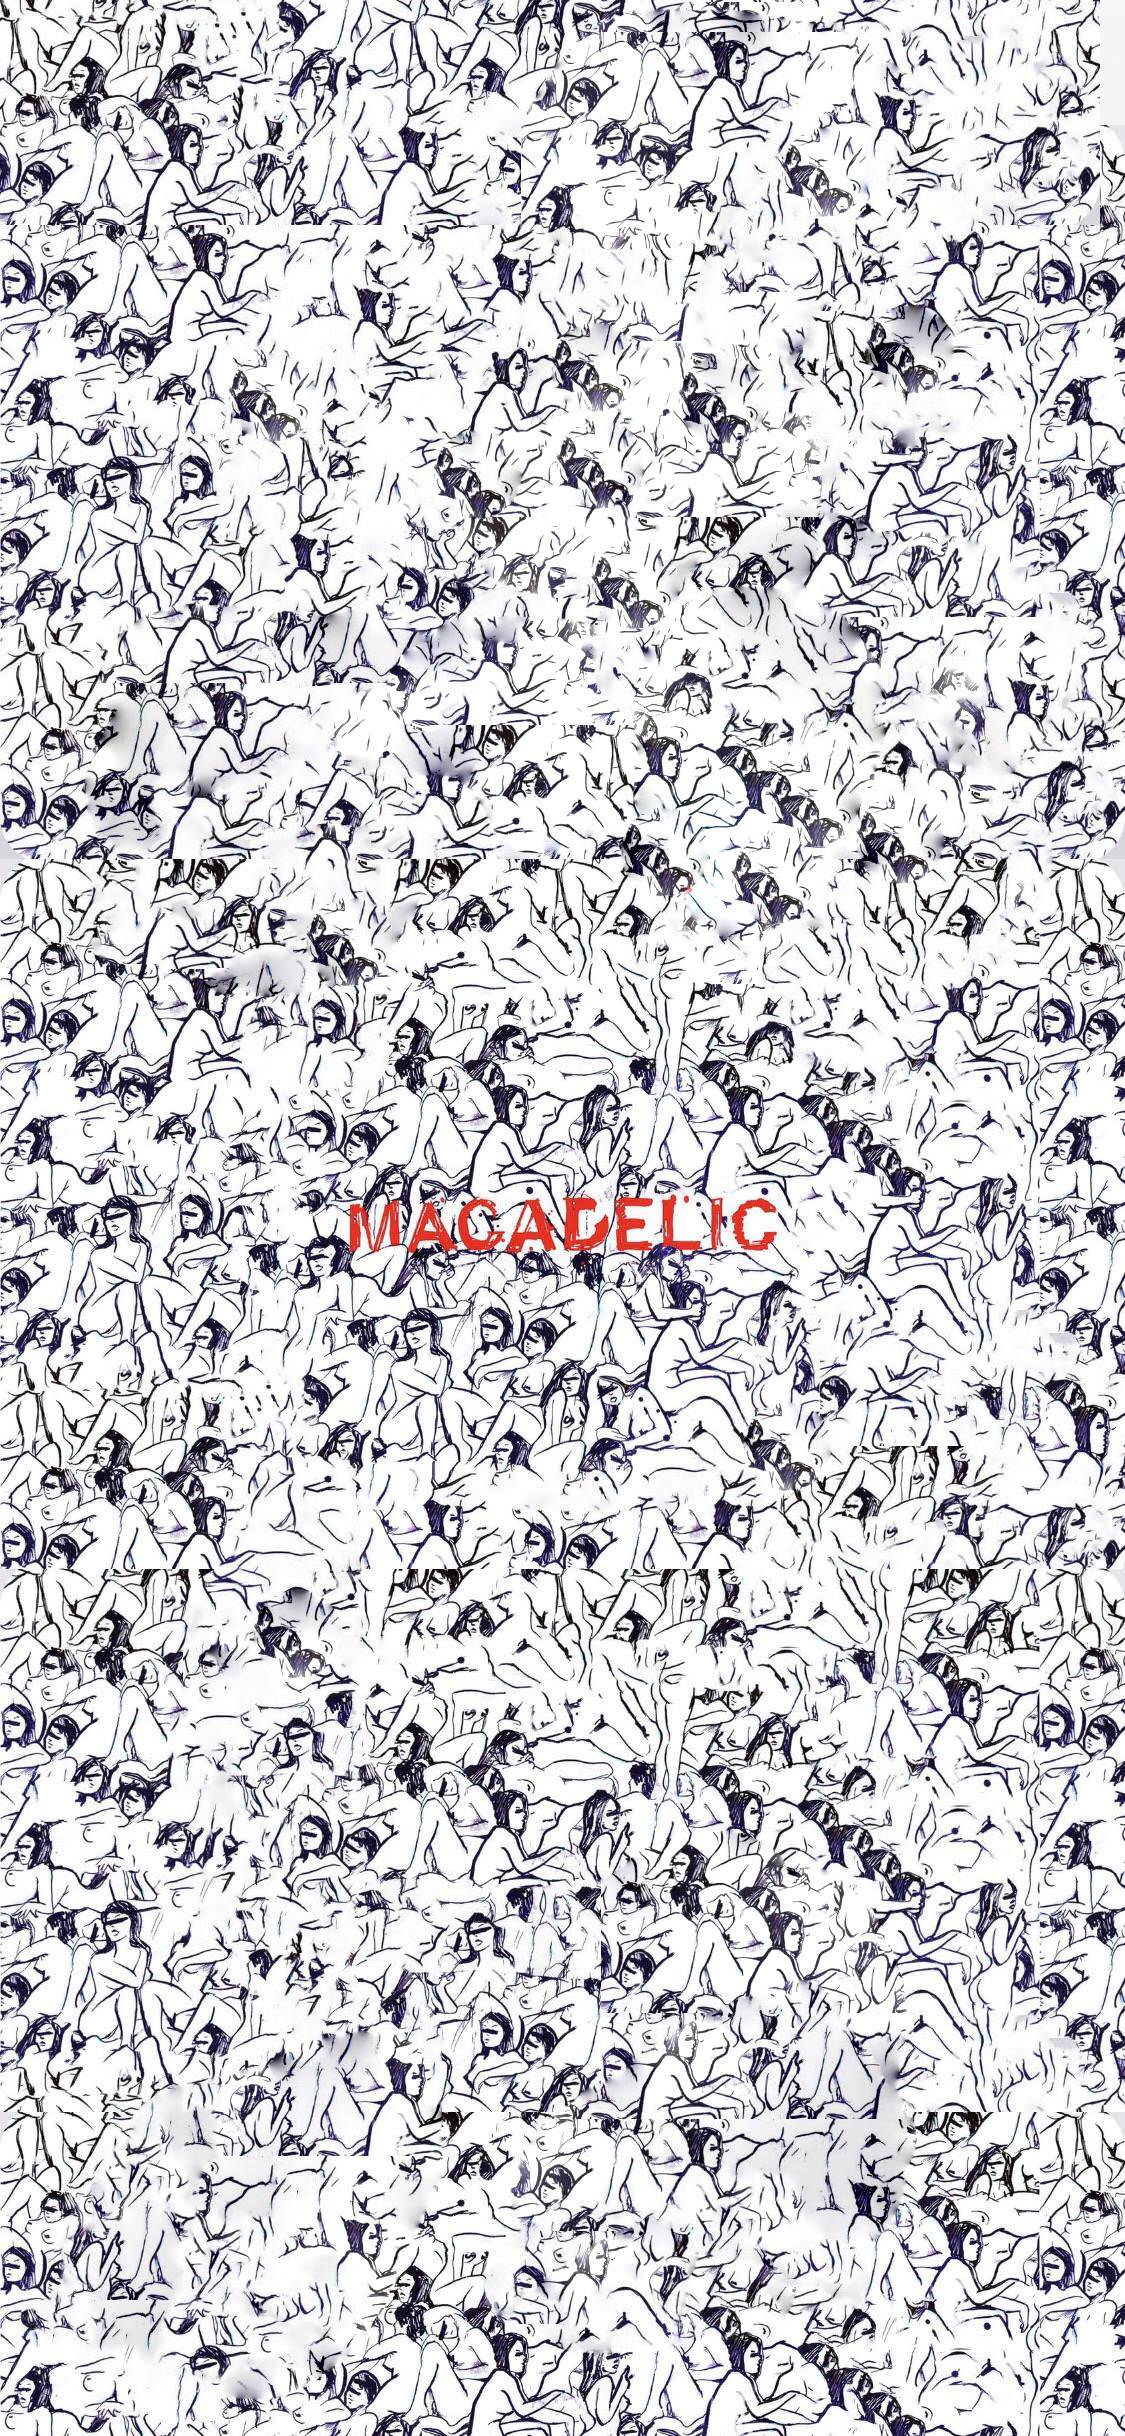 Mac Miller Macadelic Album Free Download